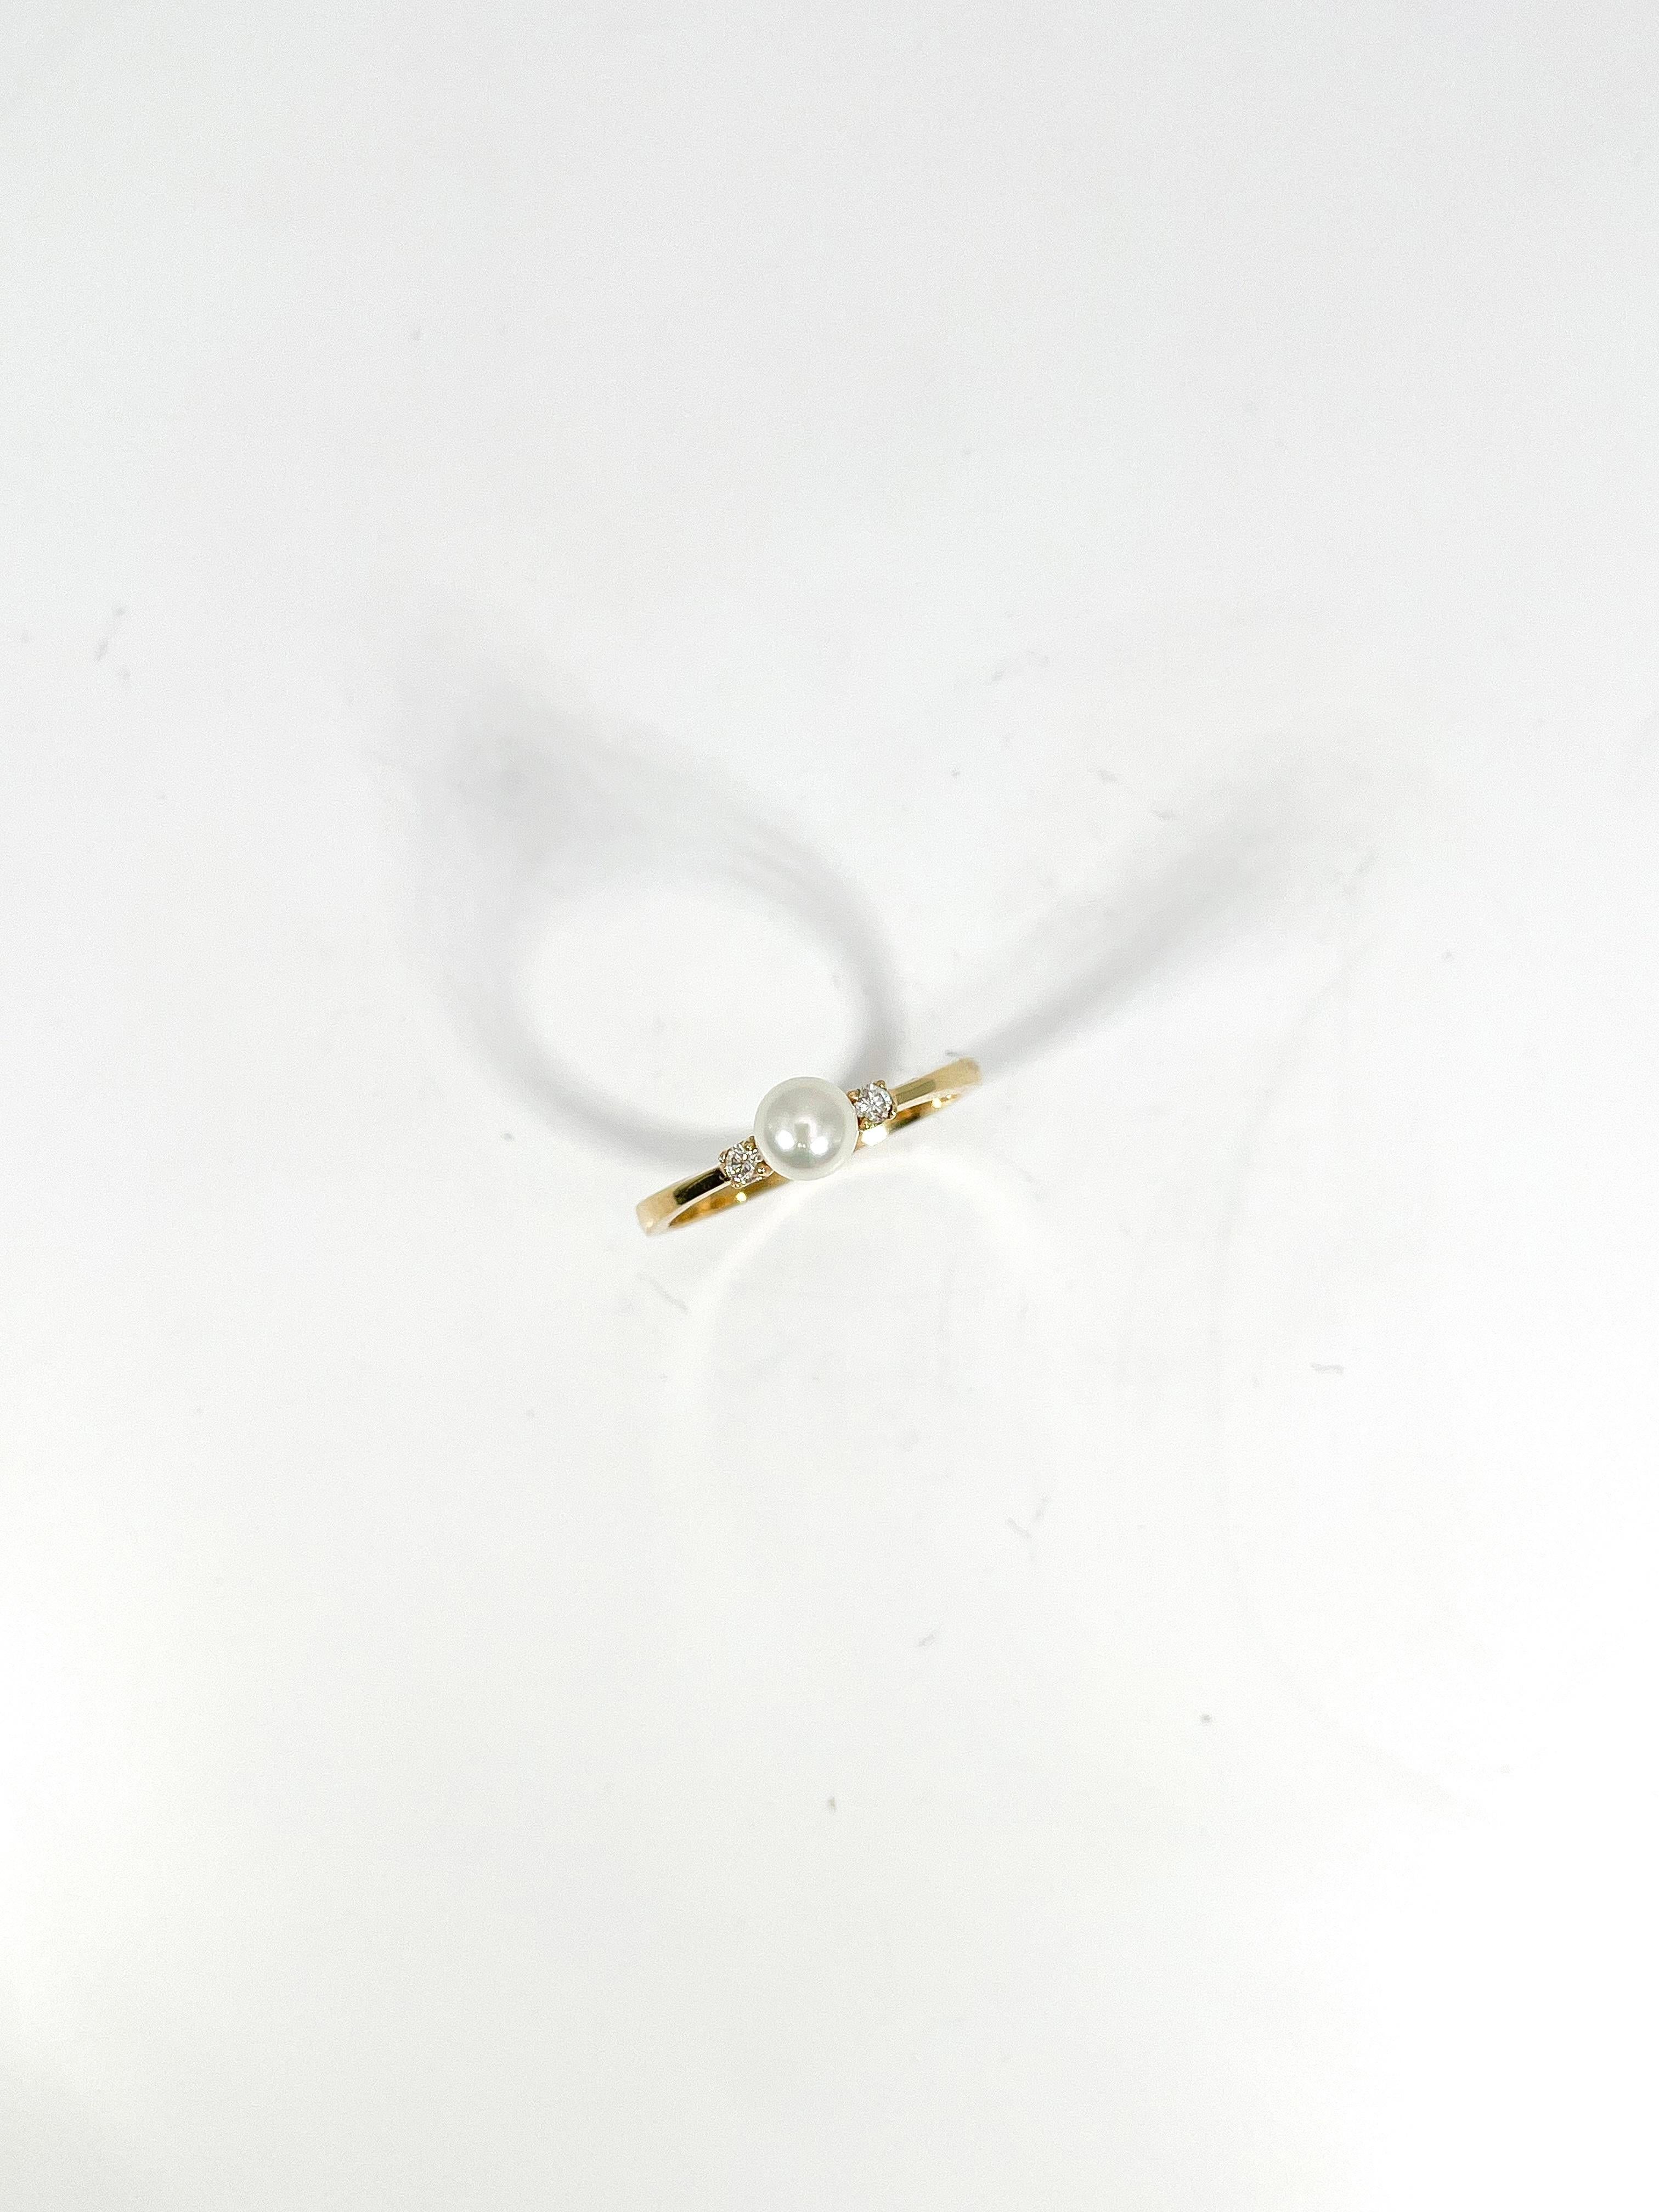 Ring aus 14k Gelbgold mit weißen Perlen und Diamanten. Die Breite dieses Rings beträgt 5 mm, die Ringgröße 6 1/4, die beiden Diamanten auf beiden Seiten der Perle sind beide rund, und er hat ein Gesamtgewicht von 1,9 Gramm